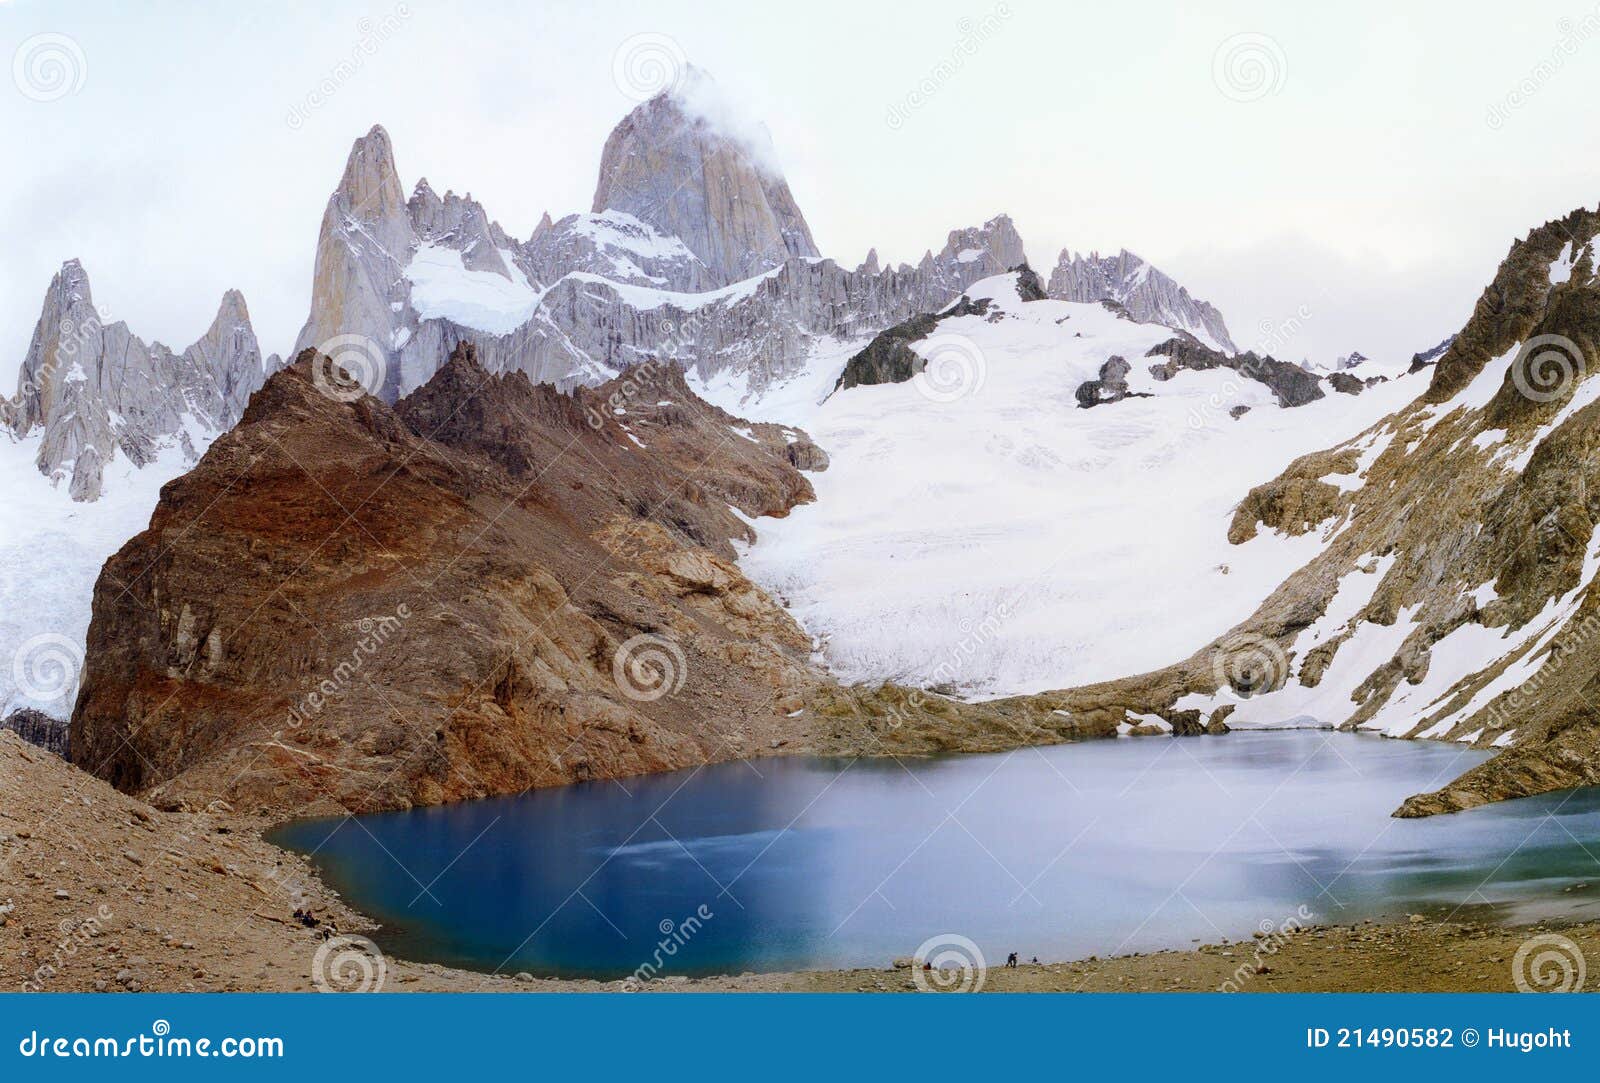 fitz roy, patagonia argentina